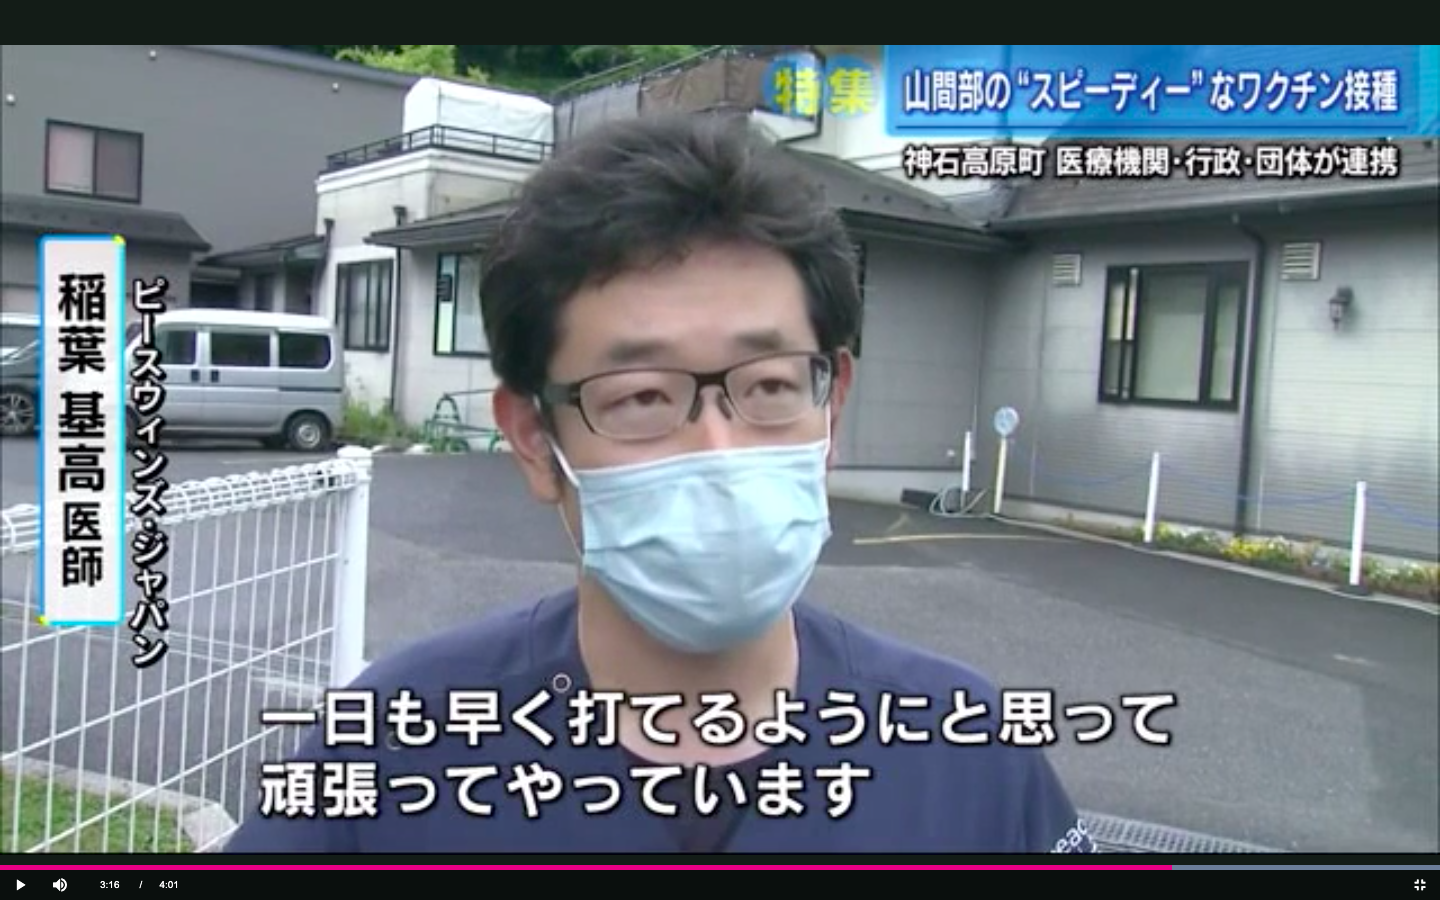 【メディア掲載】ワクチン接種支援の様子がNHKニュースや広島テレビで放映されました。